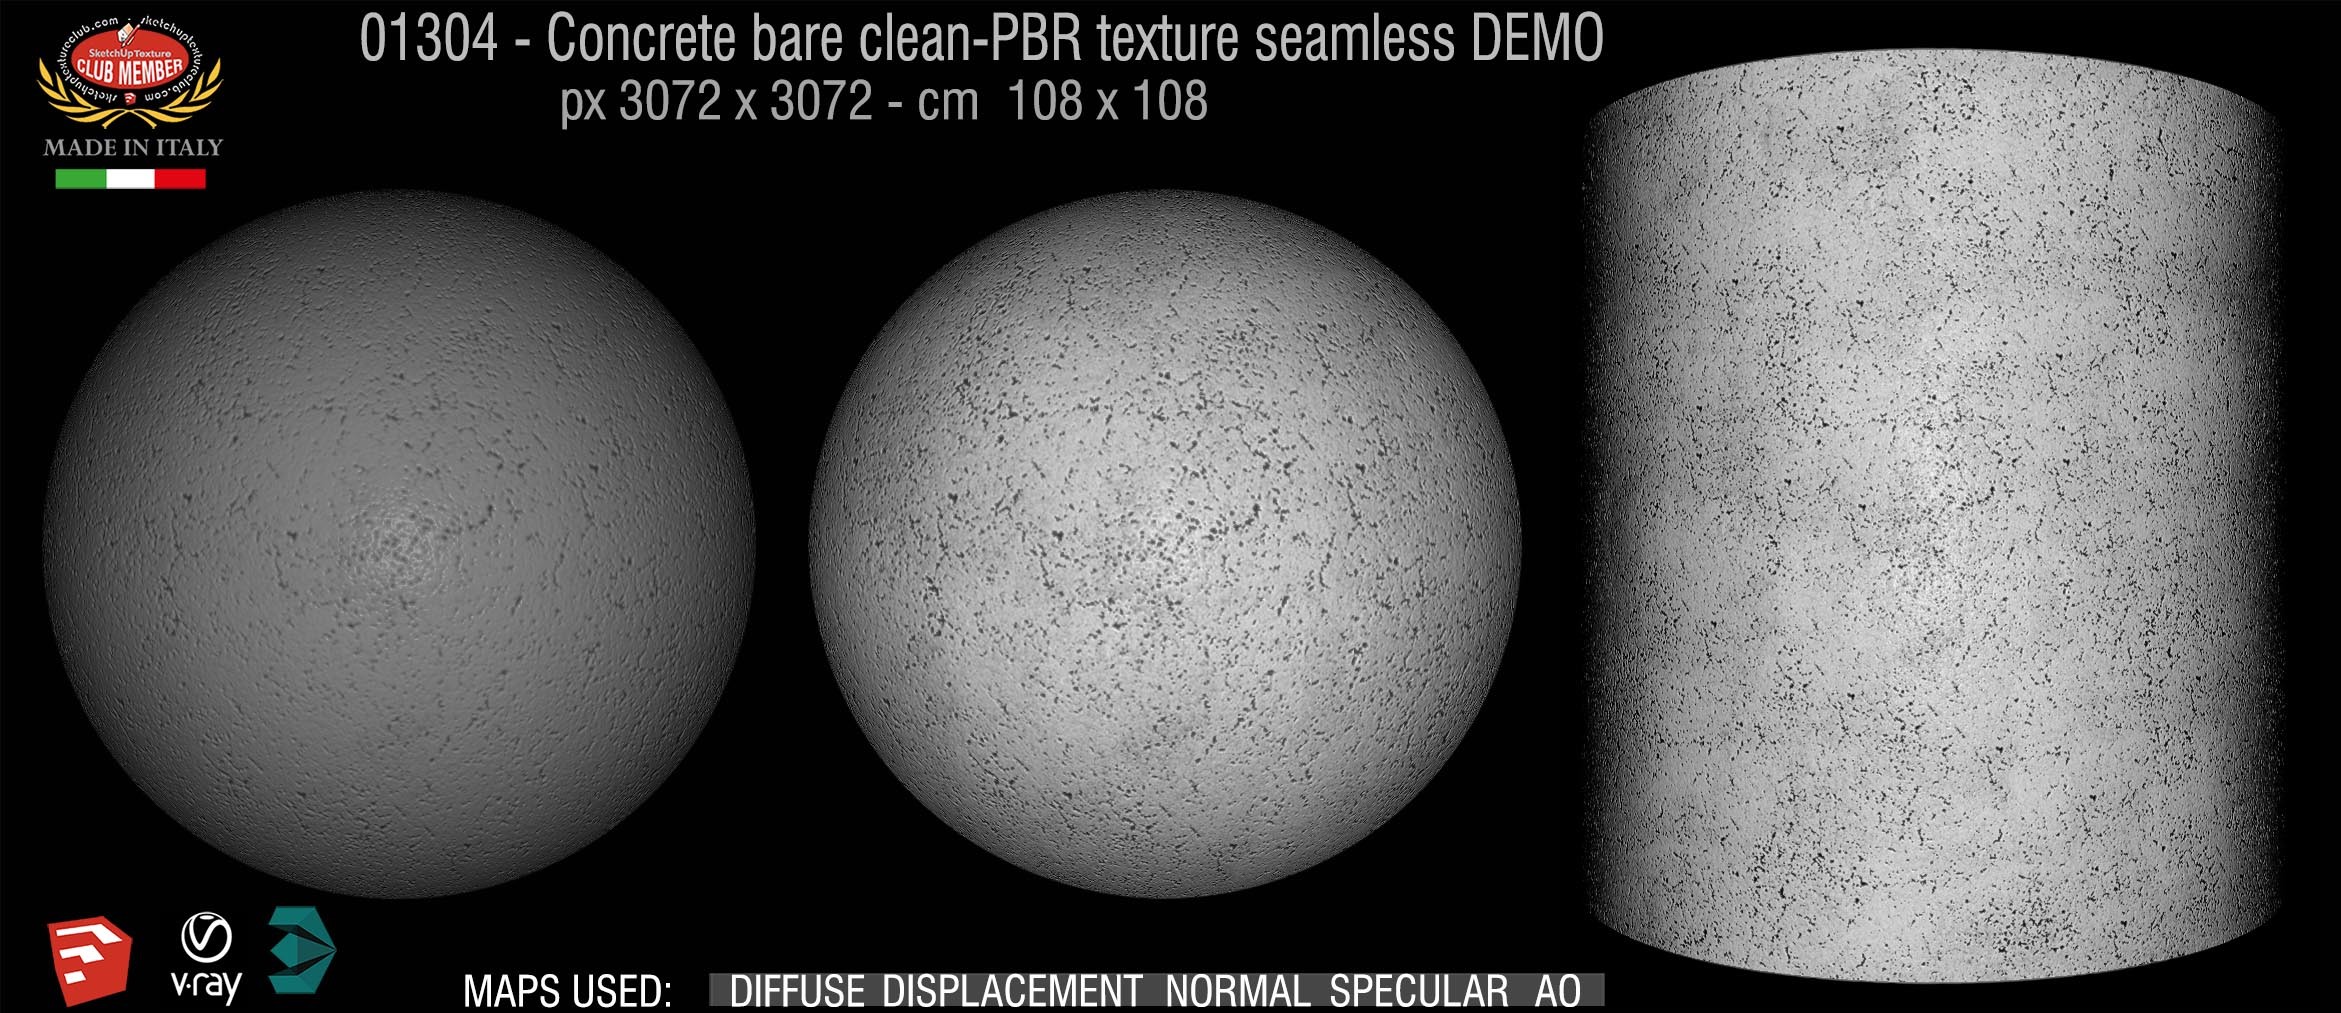 01304 Concrete bare clean-PBR texture seamless DEMO